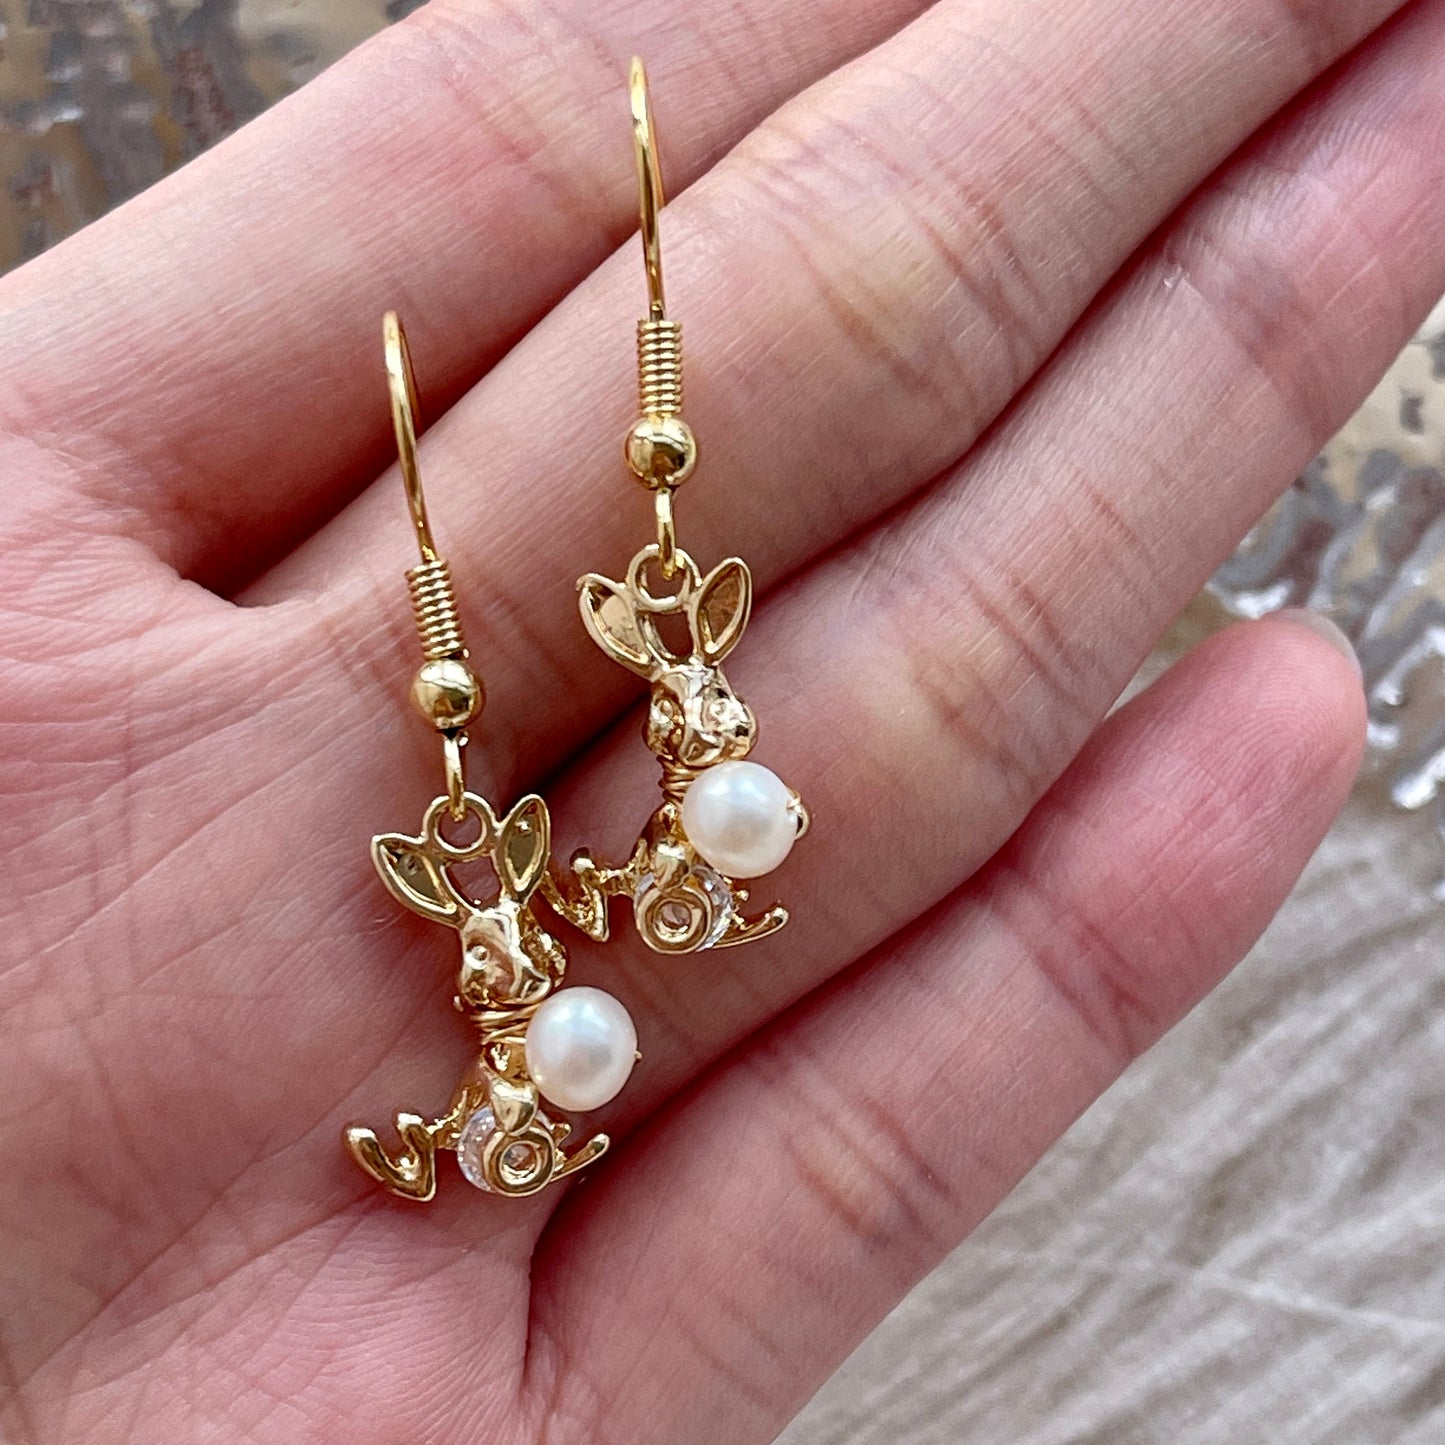 Handmade bunny earrings, 14K gold-filled dangle earrings, Natural pearl earrings, Rabbit earrings, Cute animal earrings, Unique Jewelry